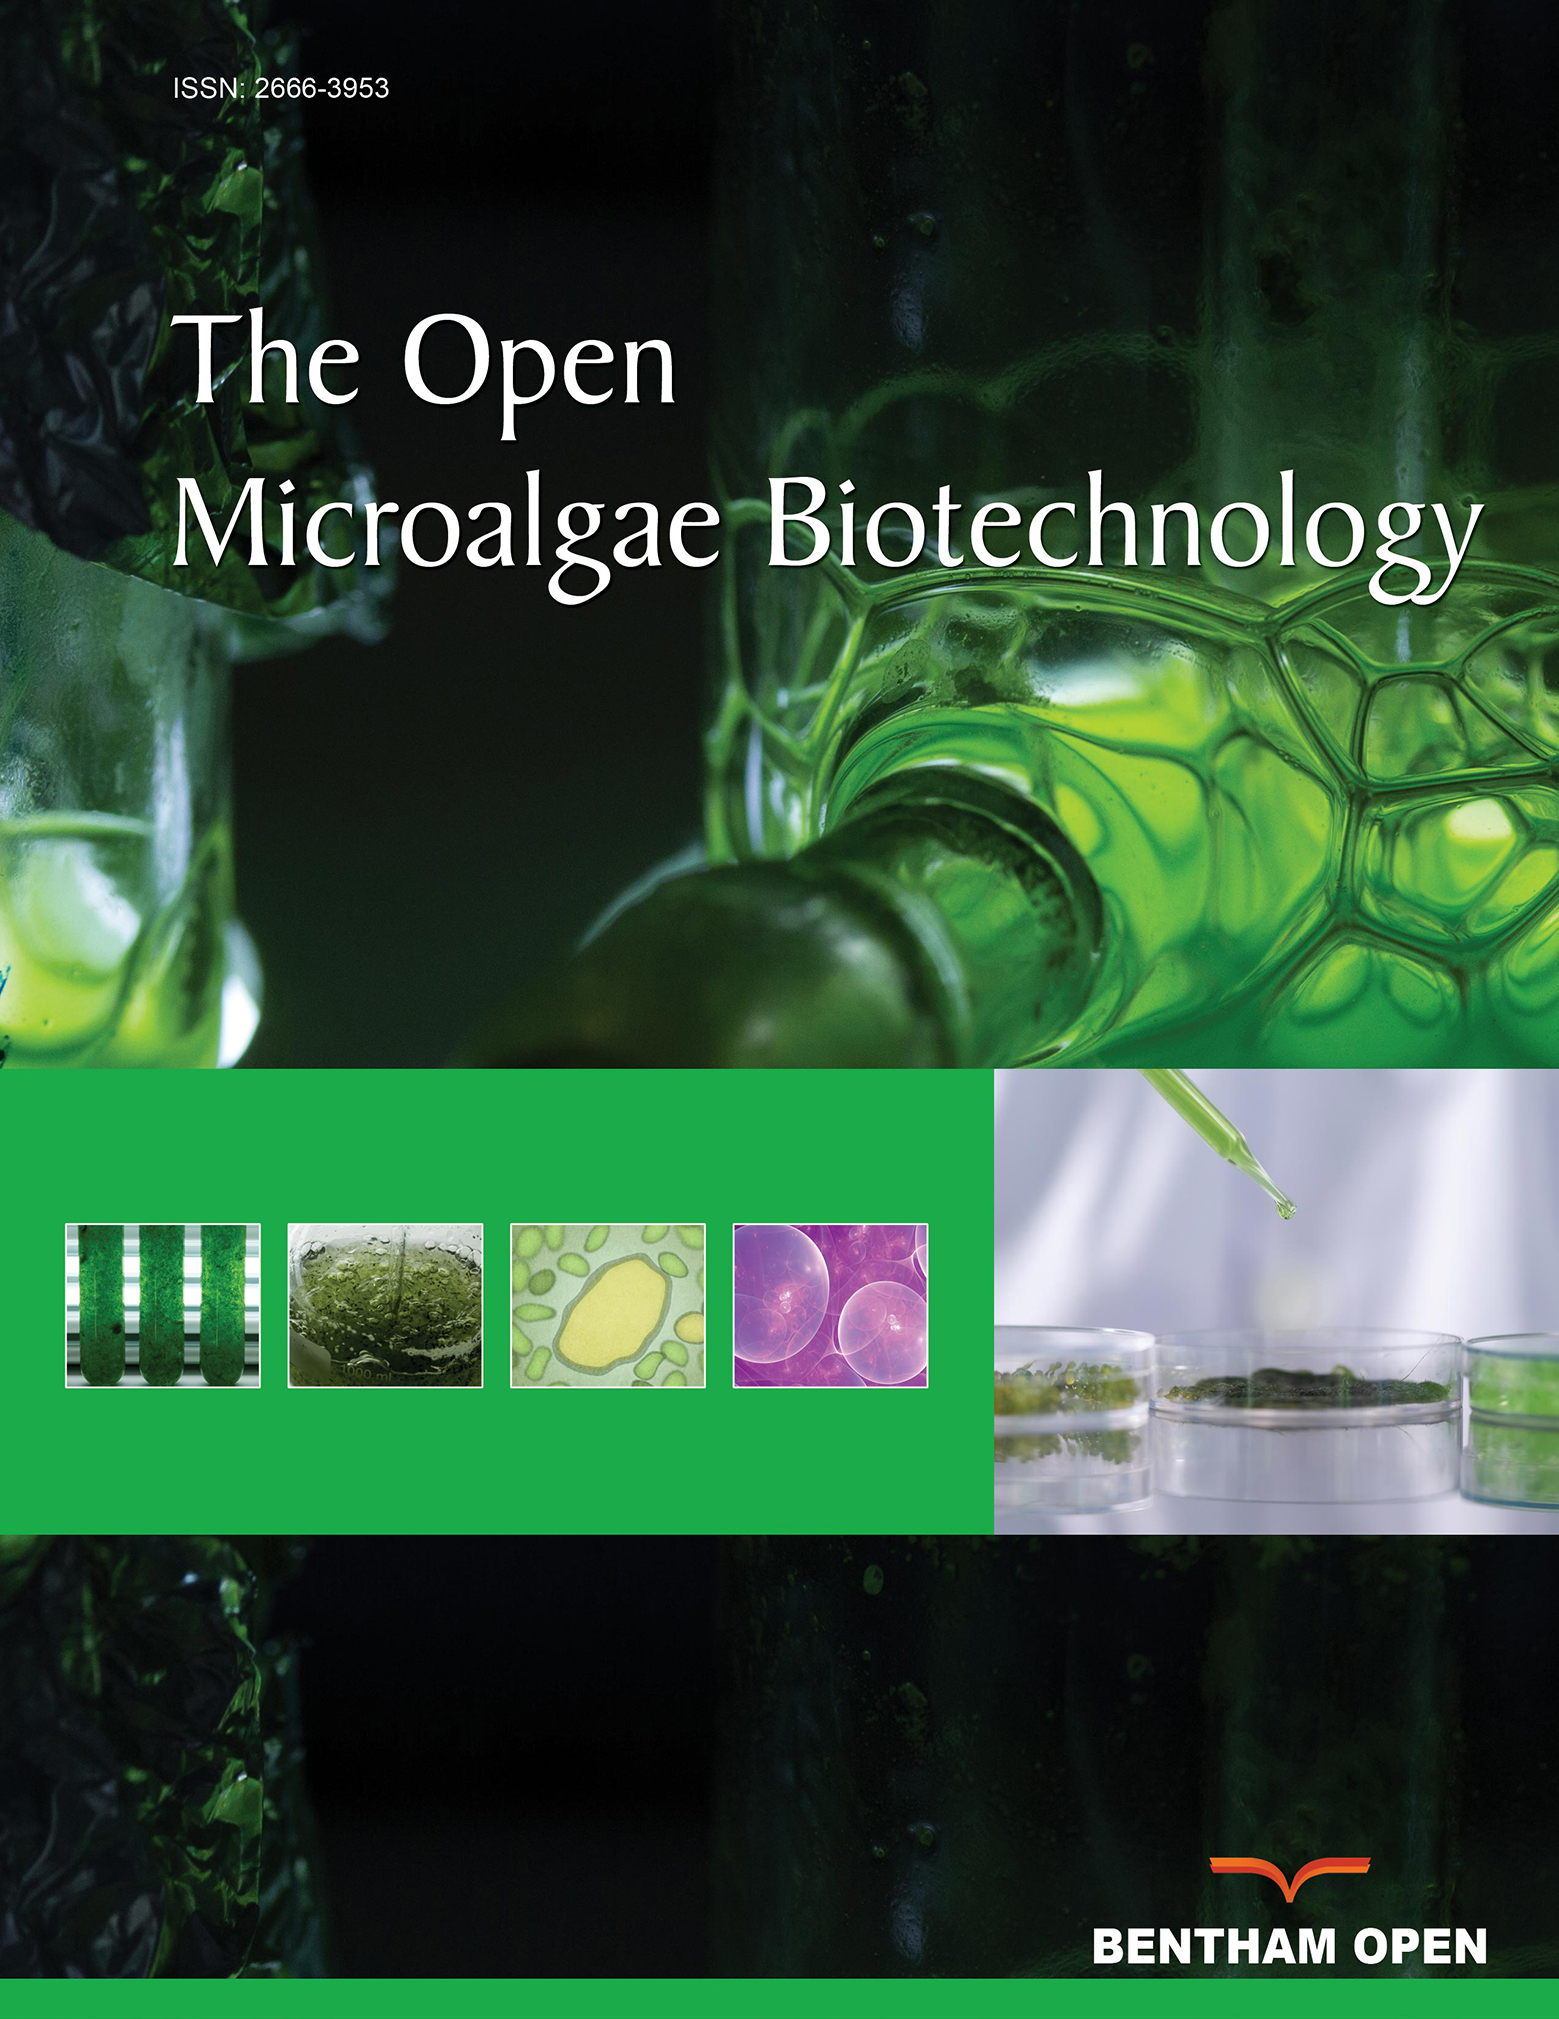 The Open Microalgae Biotechnology Journal